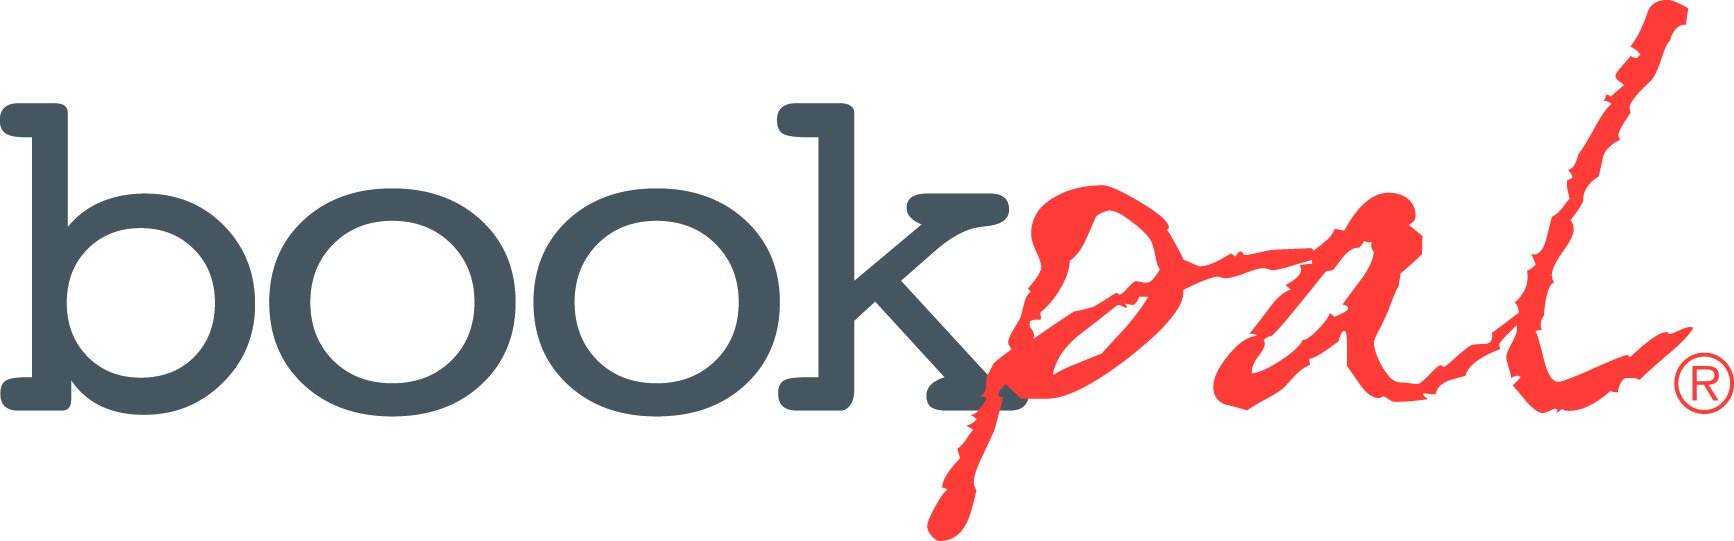 BookPal_logo-1476466828.jpg